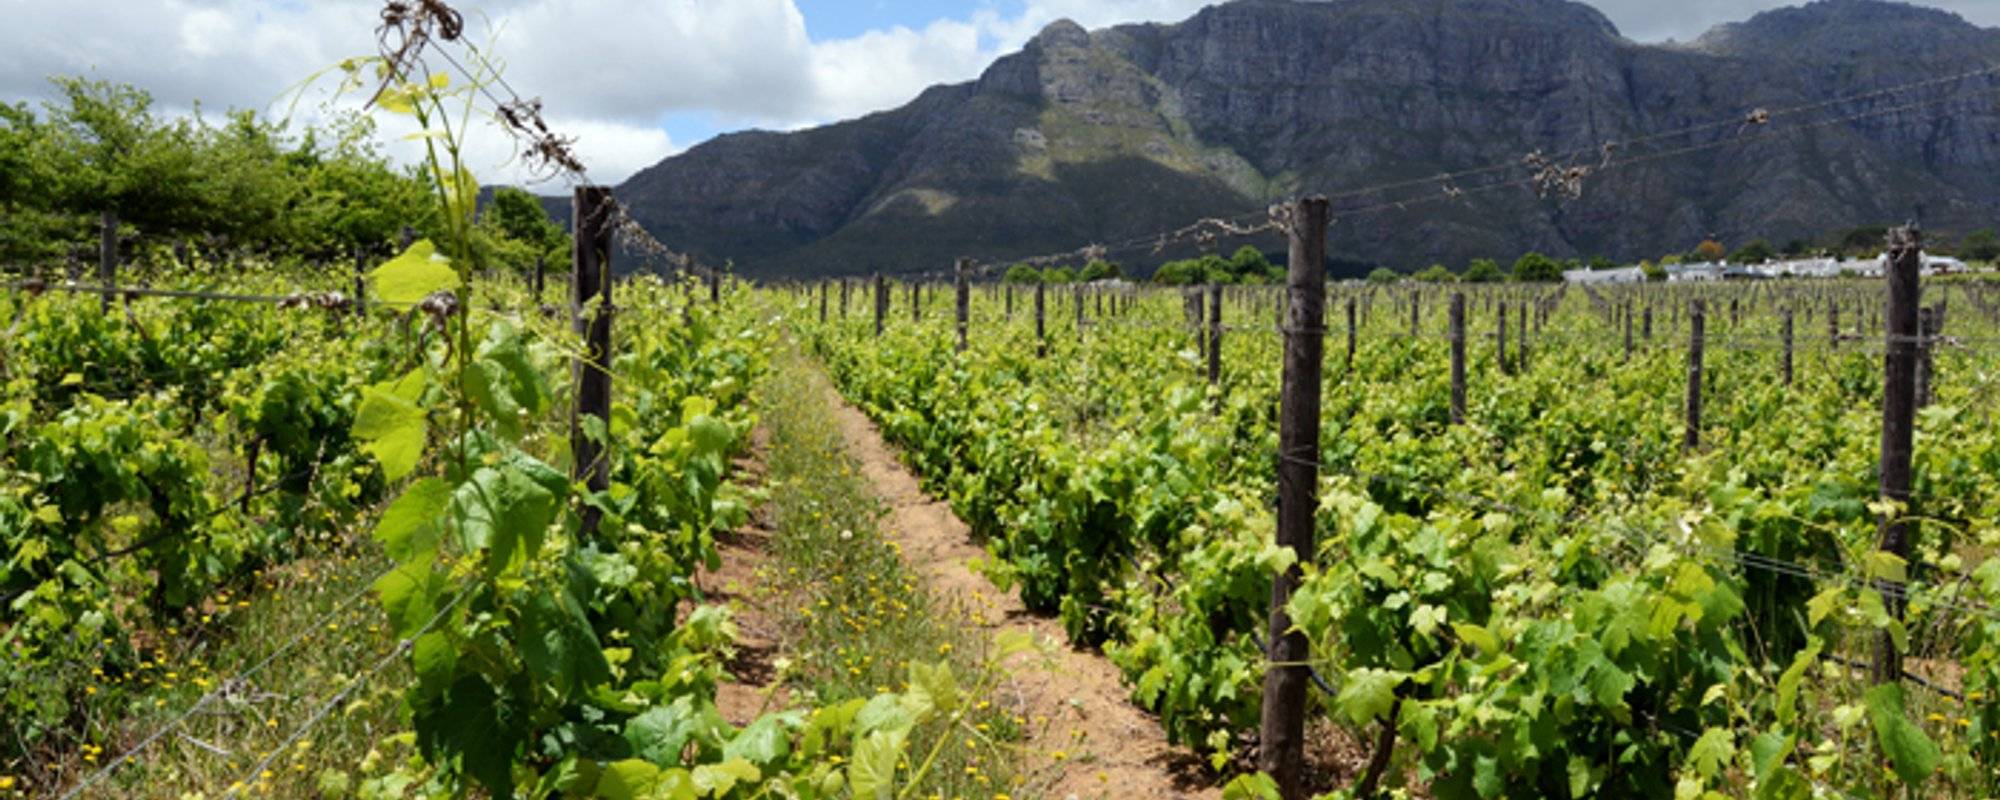 SOUTH AFRICA – wine tasting in Stellenbosch